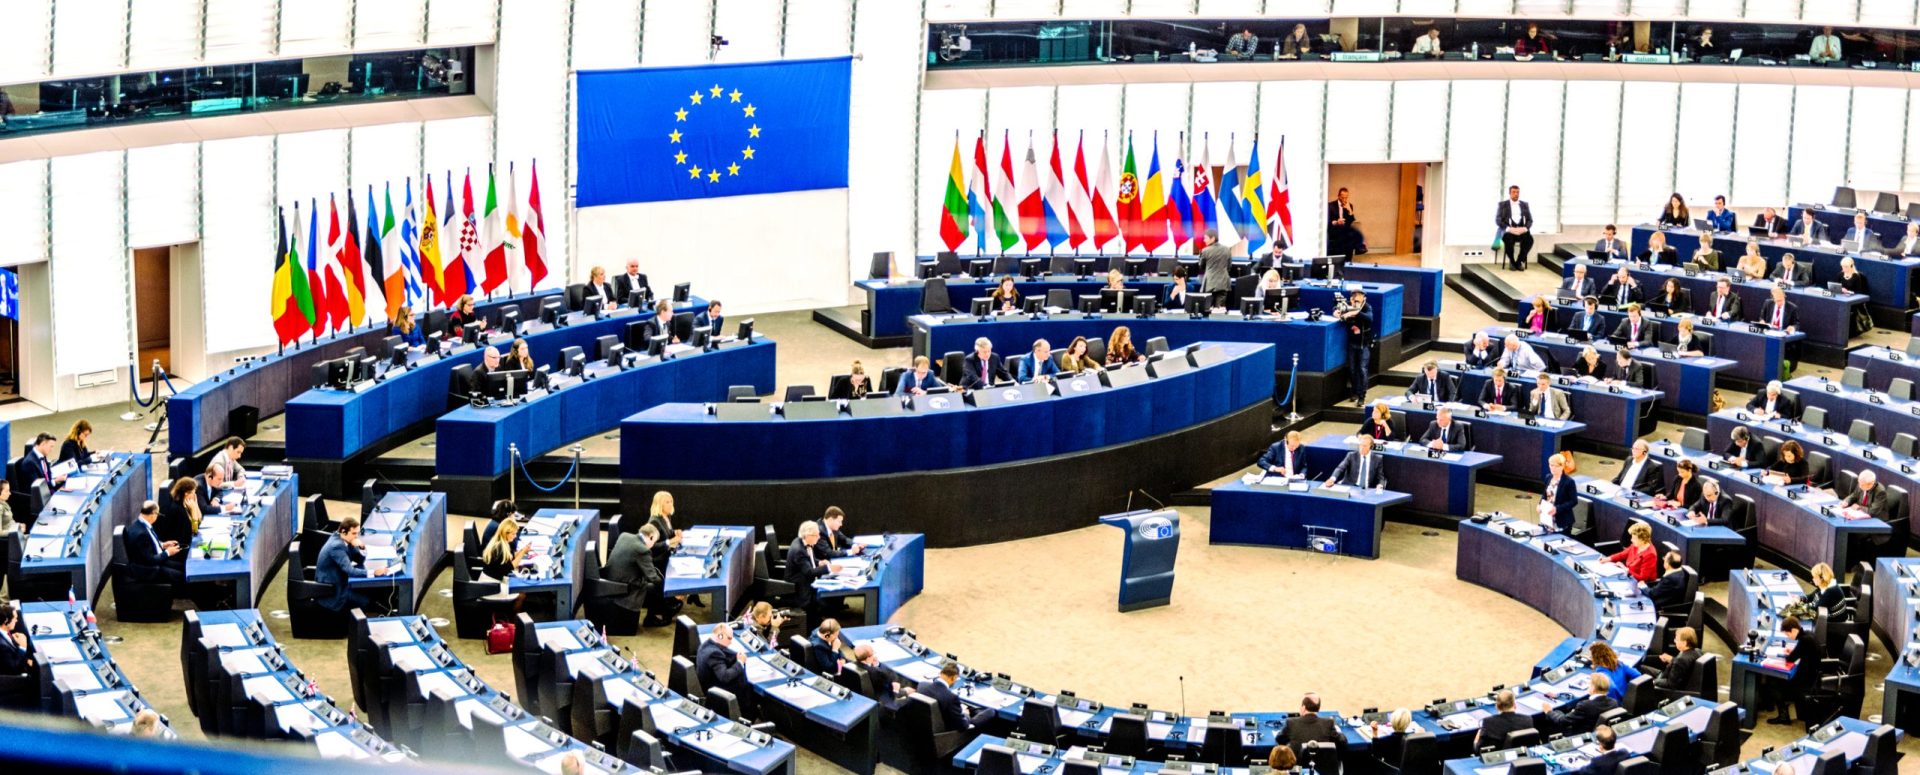 Conselho Europeu sob crítica por ter estágios não-remunerados